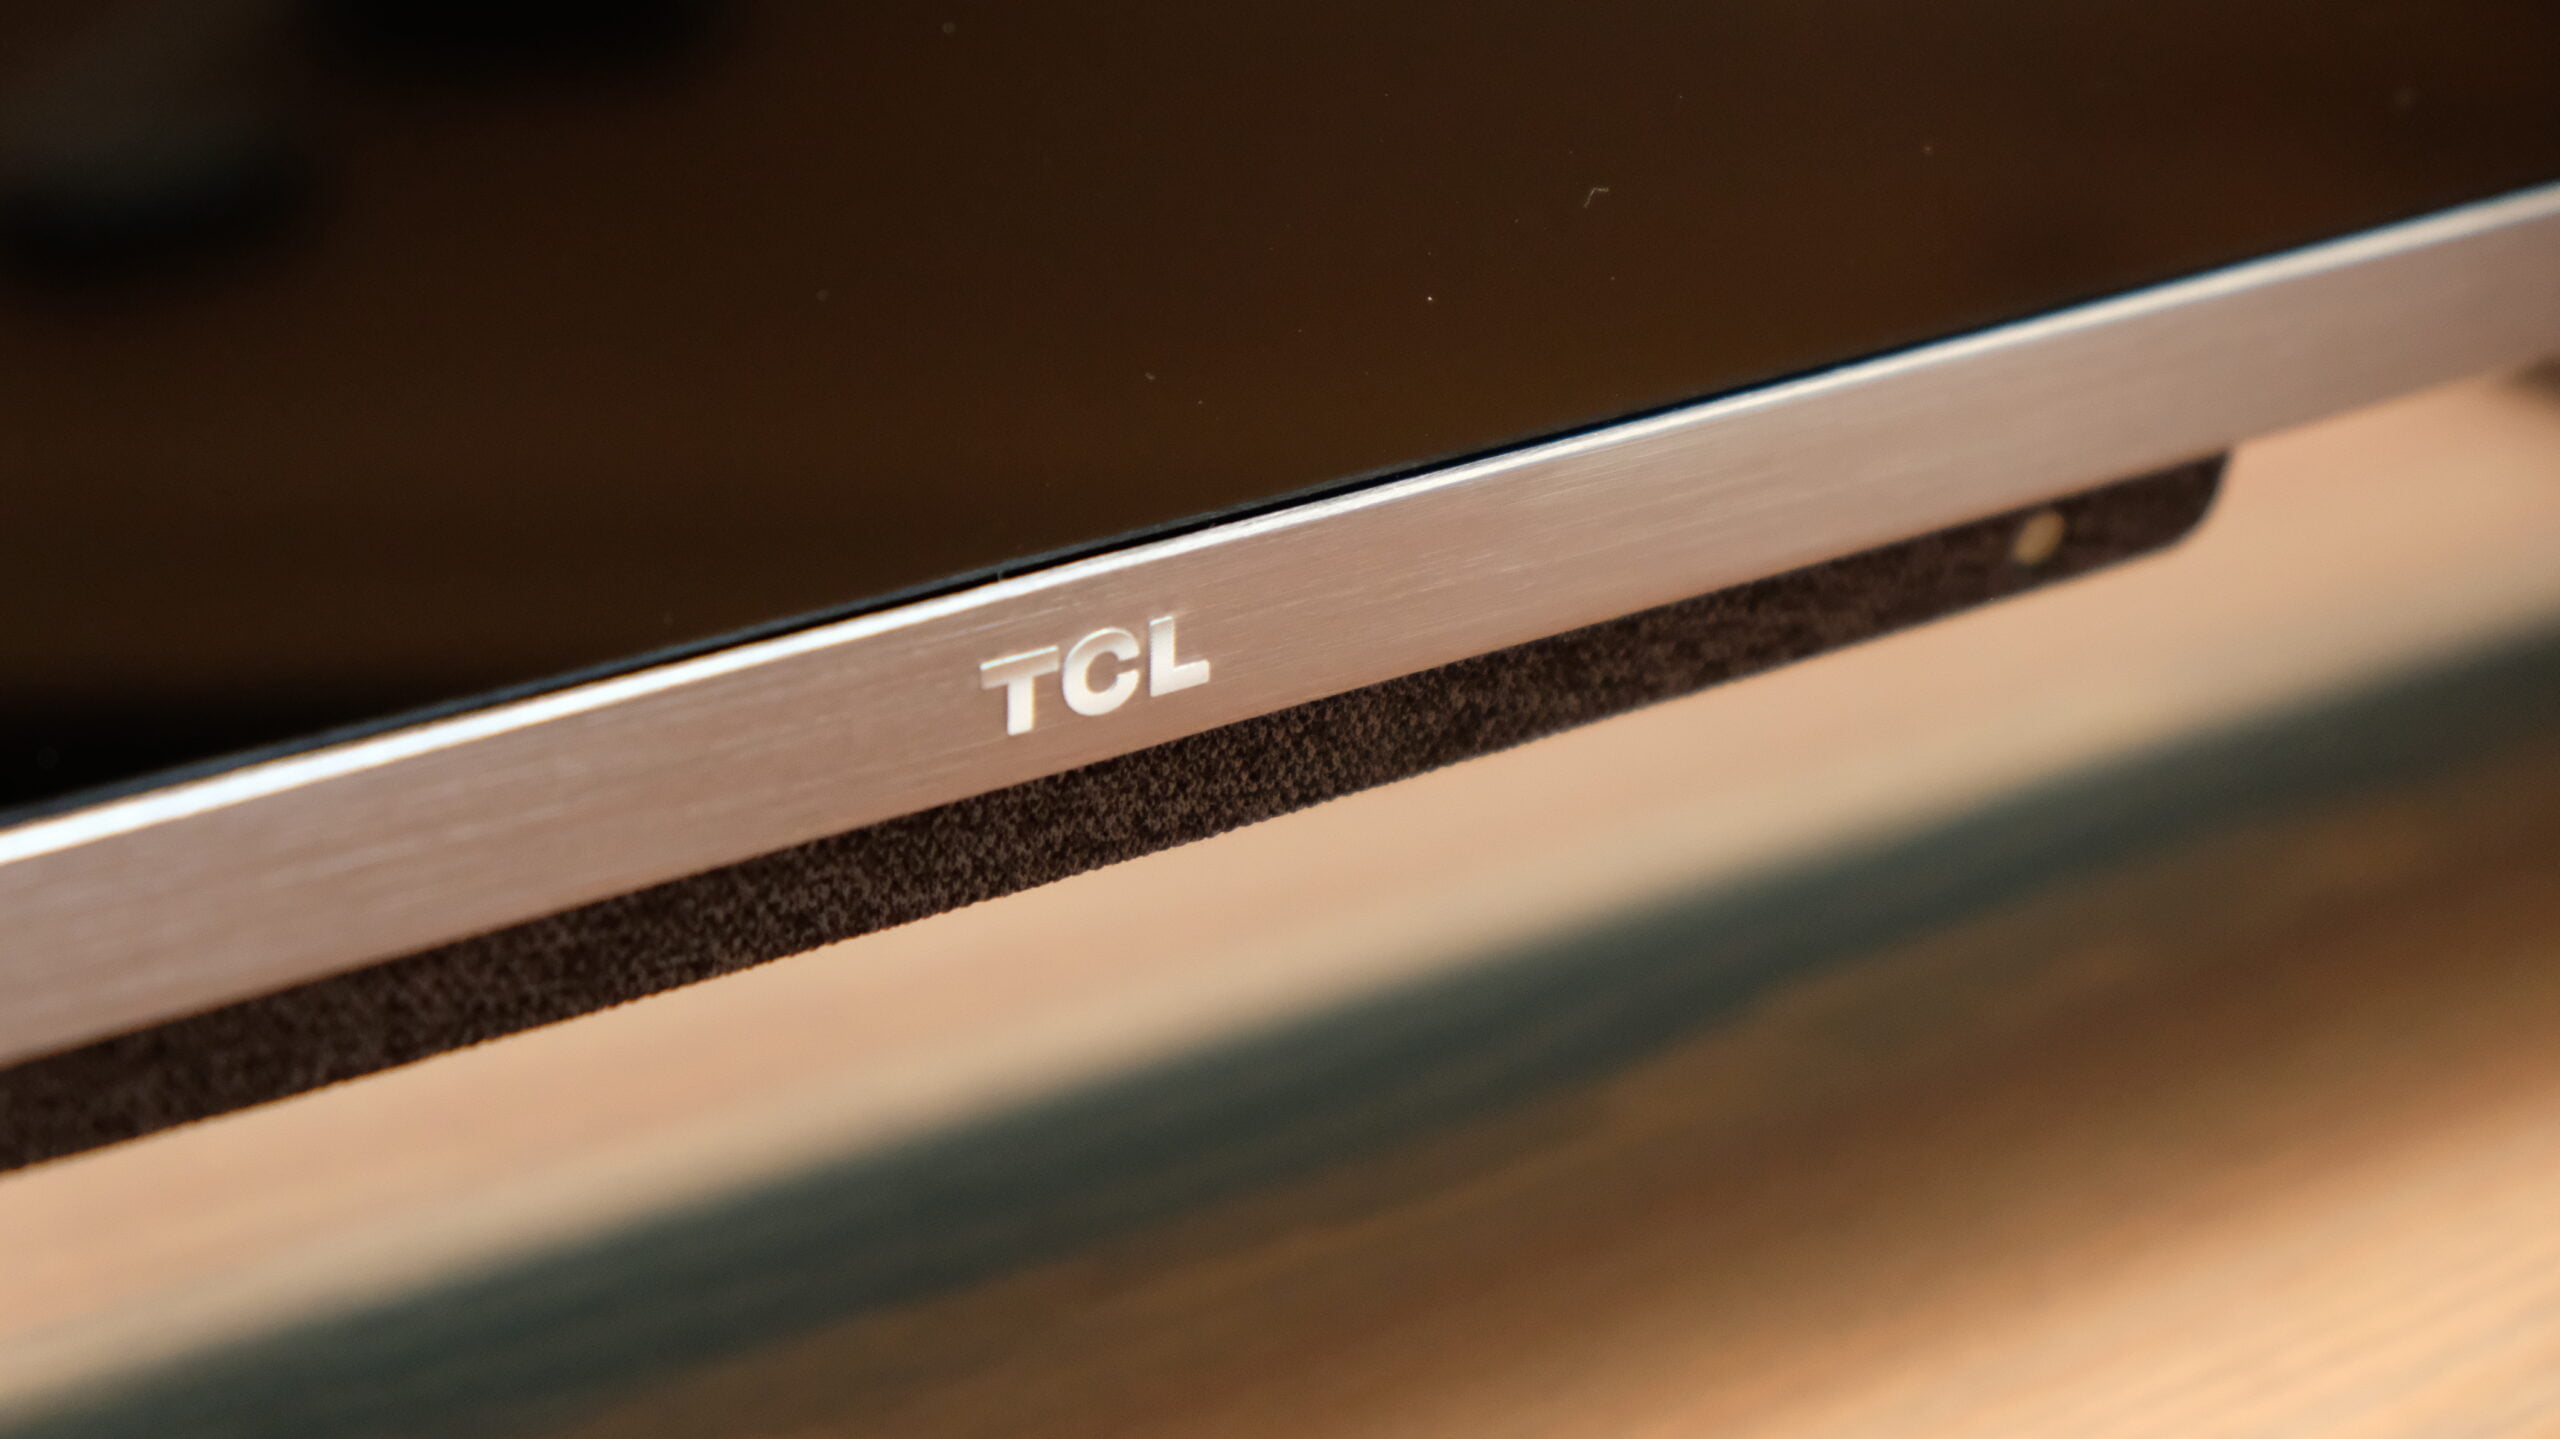 Recenzja TCL C728, zdjęcie główne przedstawiające spód telewizora z widocznym logo